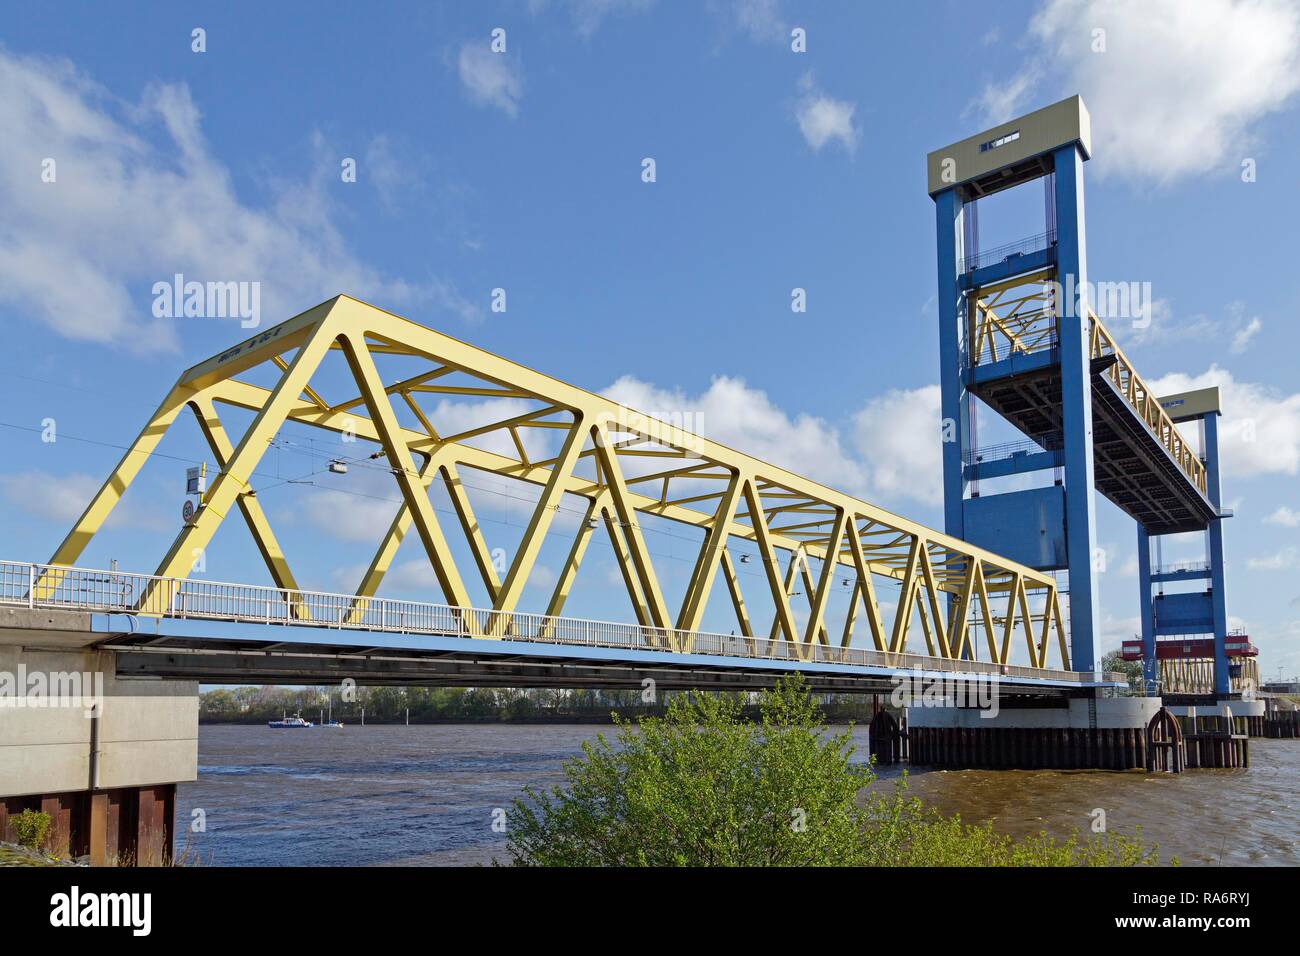 Kattwykbrücke, lift bridge, open, Hamburg, Germany Stock Photo